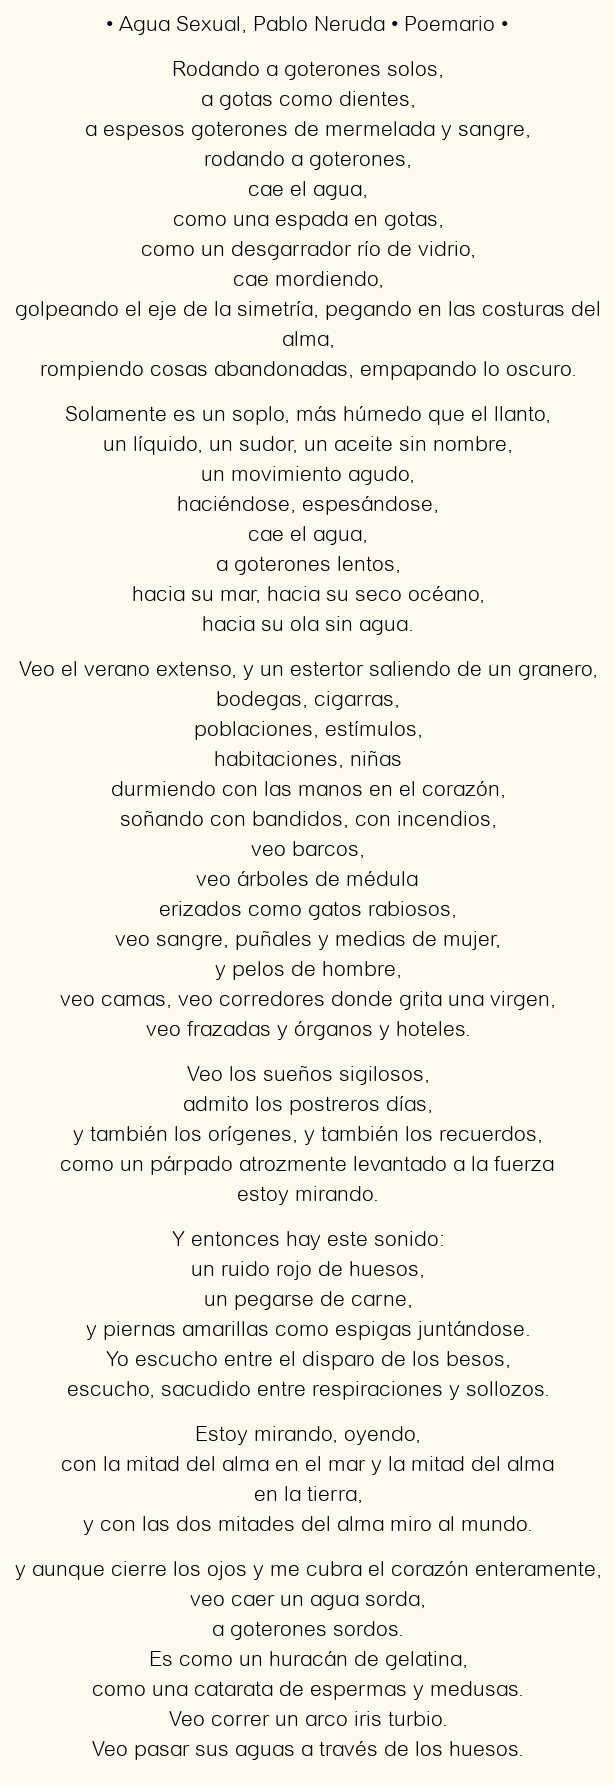 Imagen con el poema Agua Sexual, por Pablo Neruda